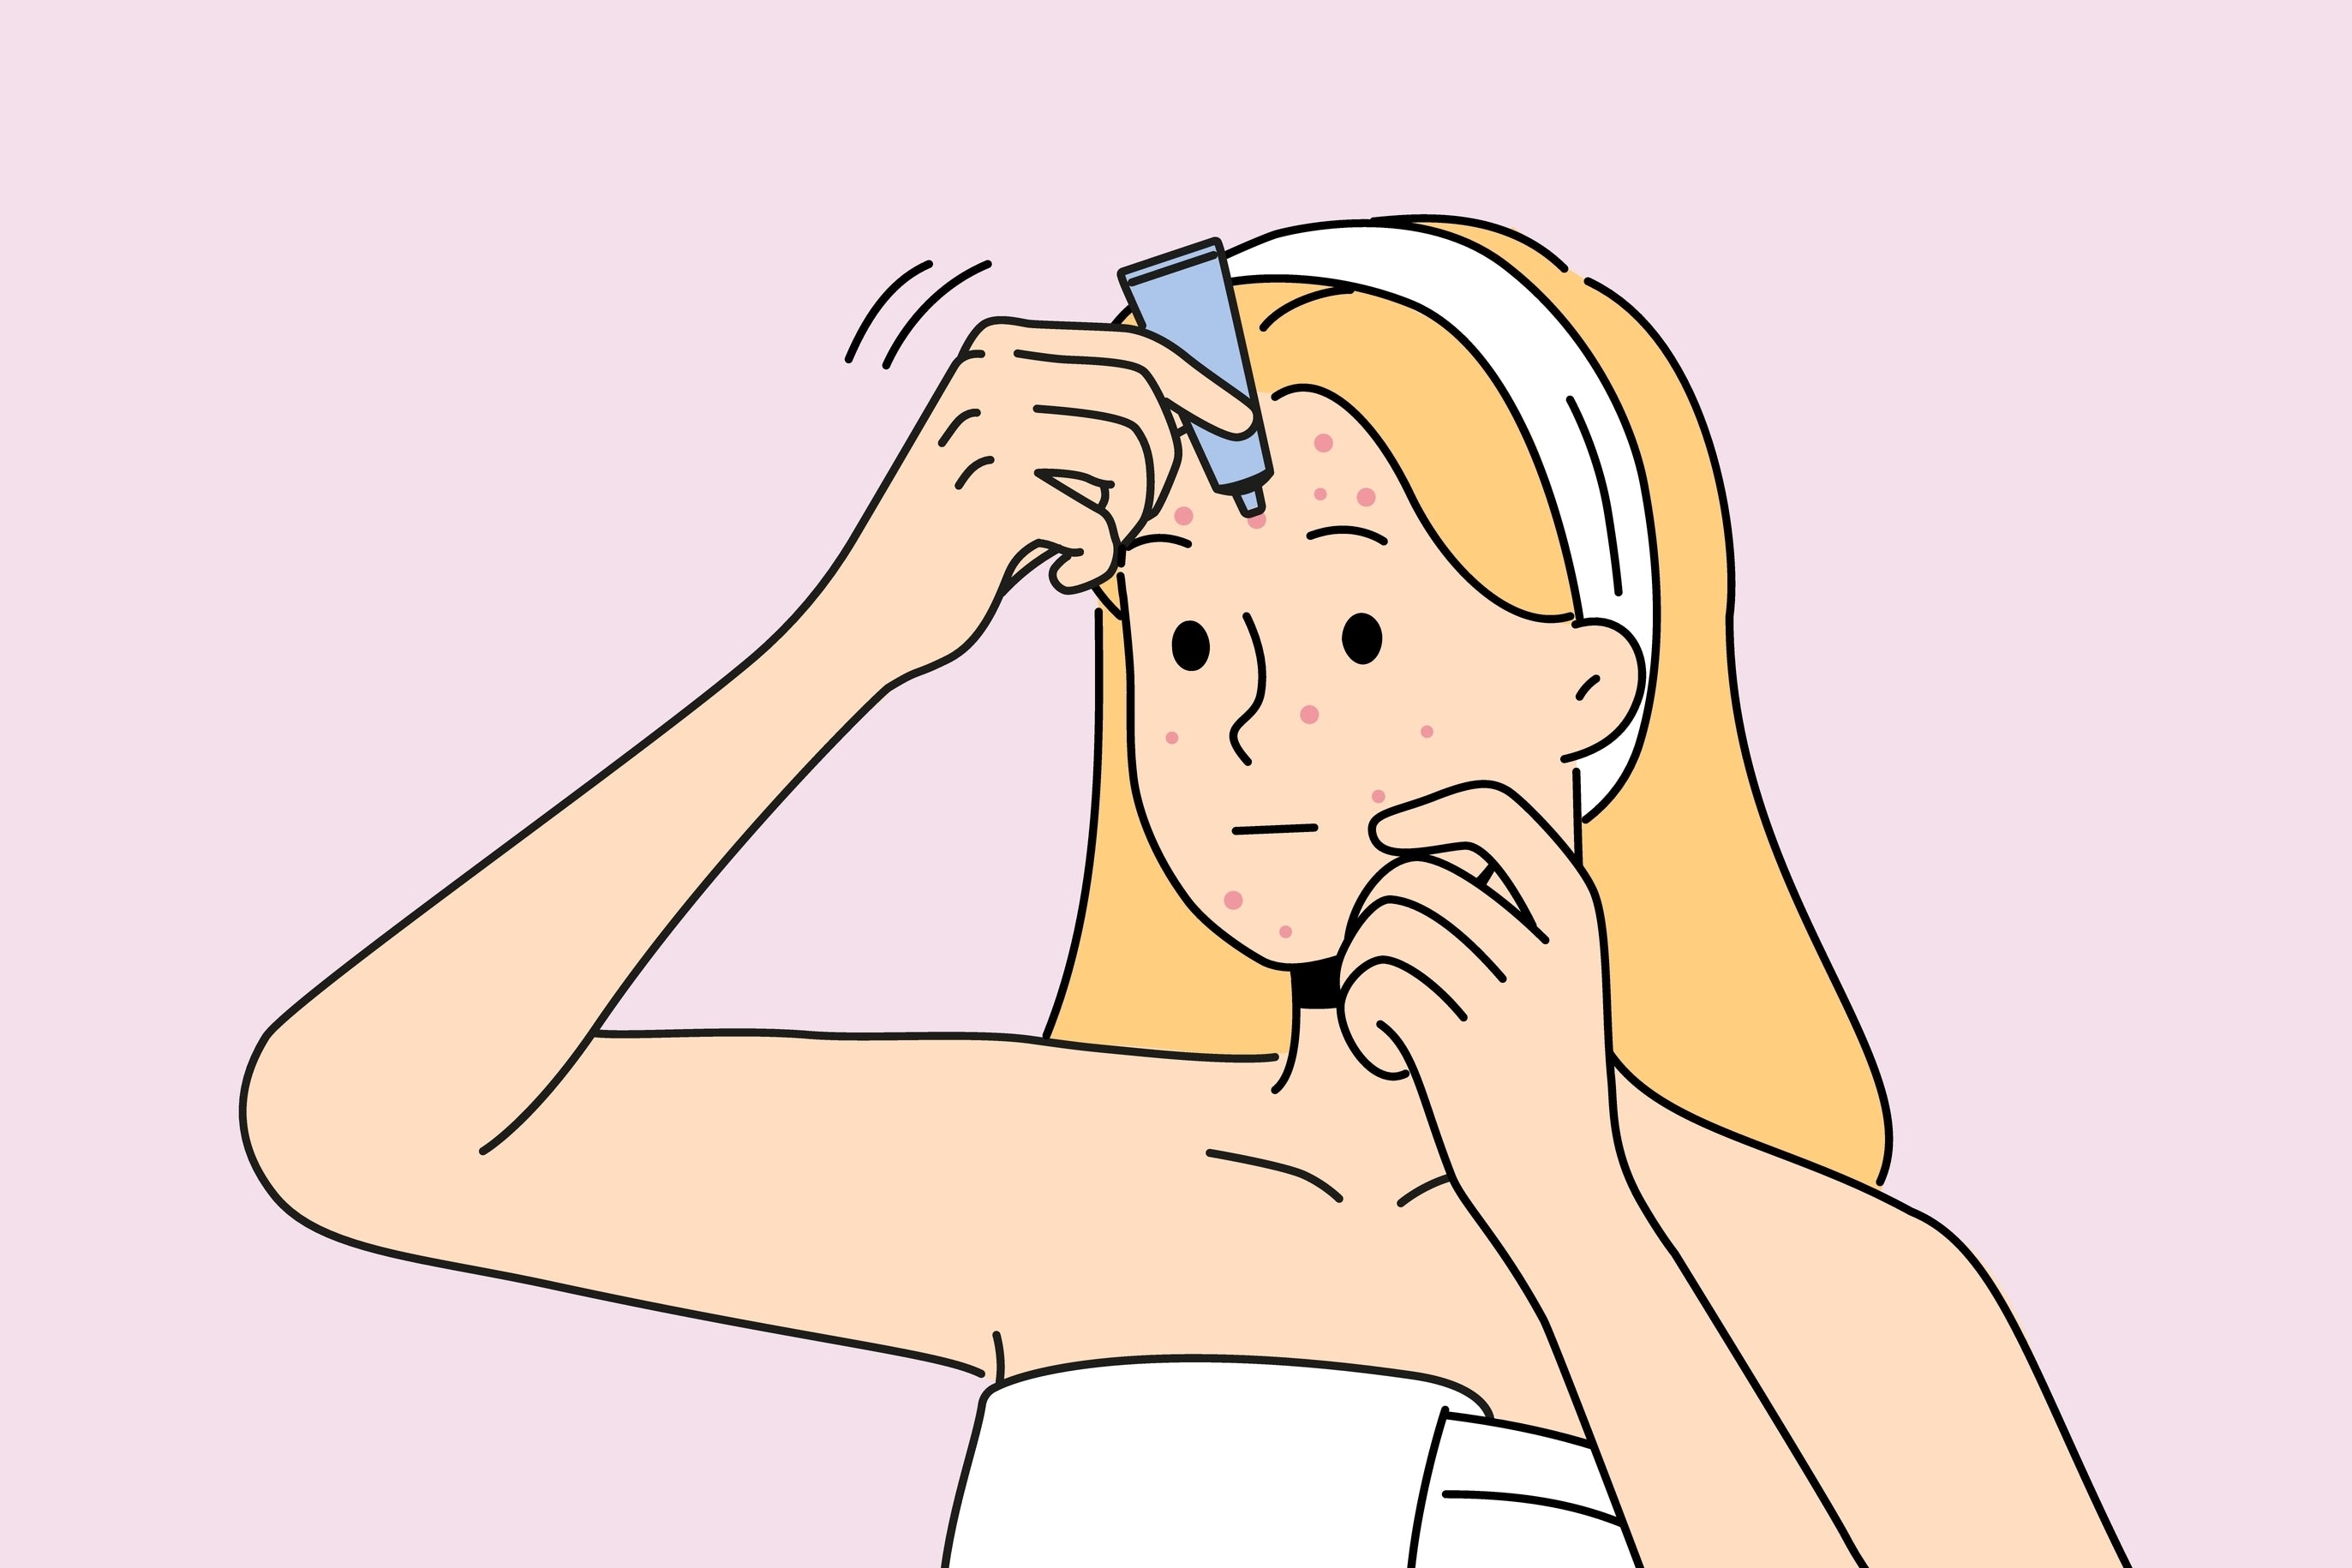 Nodule vs. Cystic Pimple: Key Differences